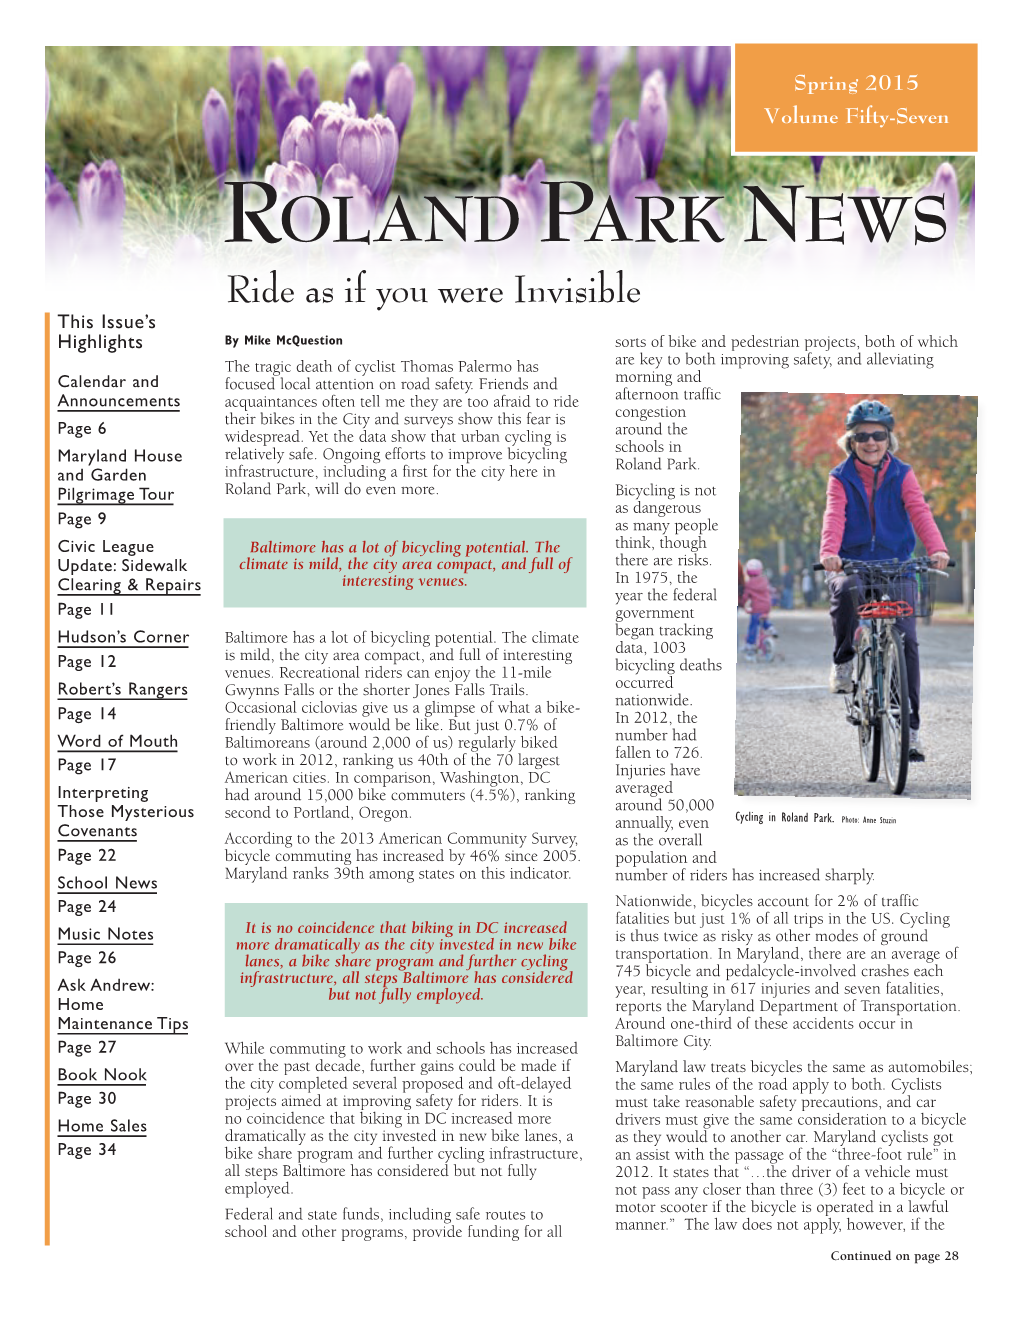 Spring 2015 Roland Park News